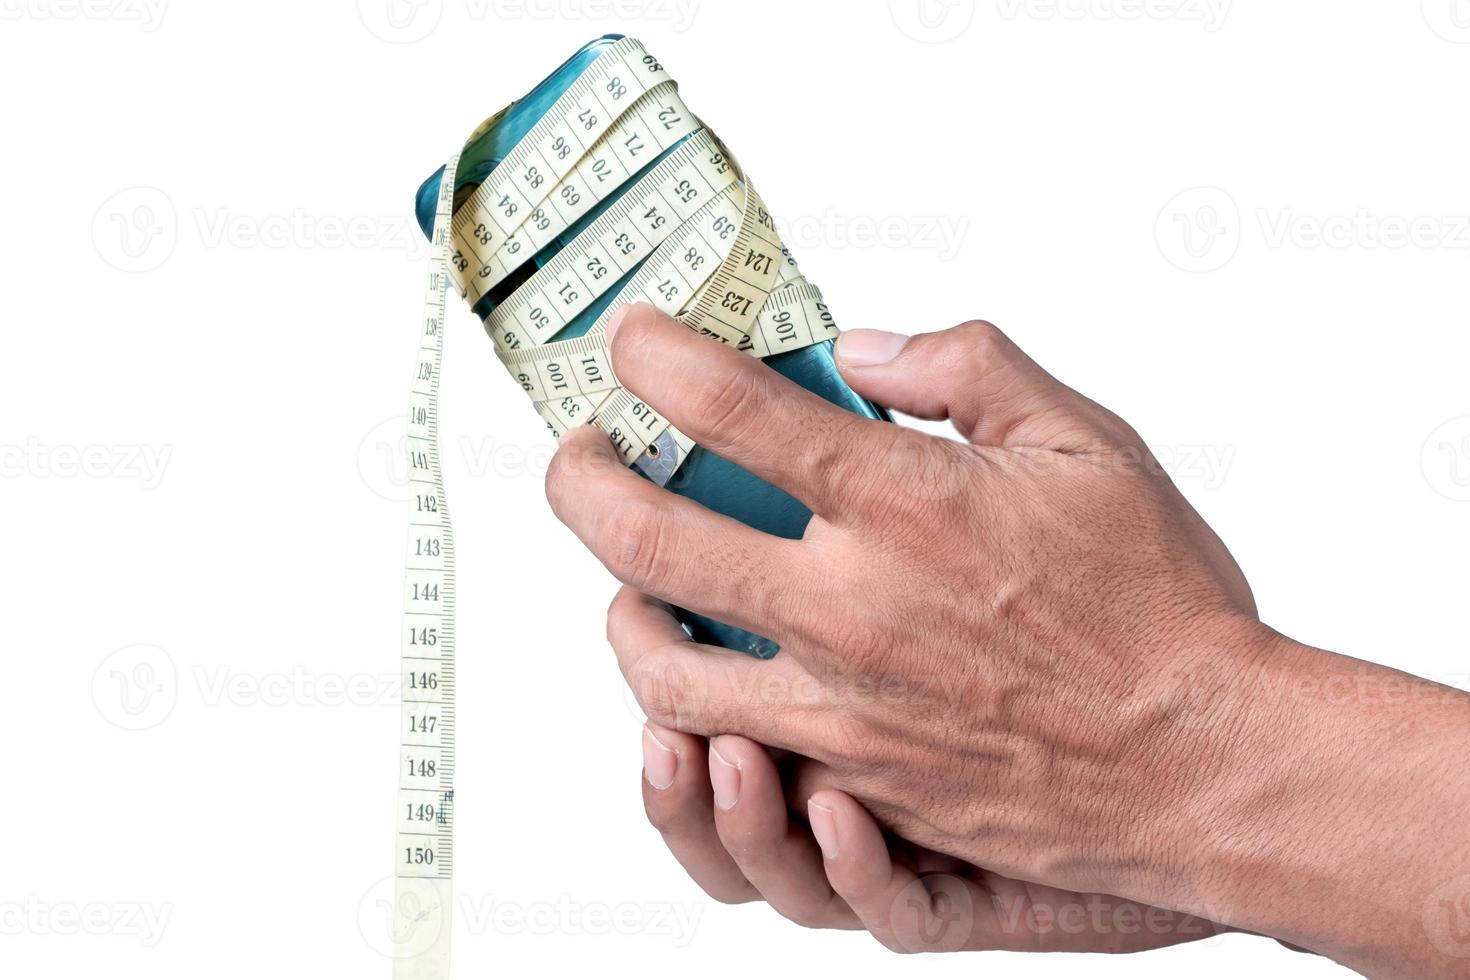 Masculin main en portant téléphone portable enveloppé avec mesure ruban isolé sur blanc Contexte photo